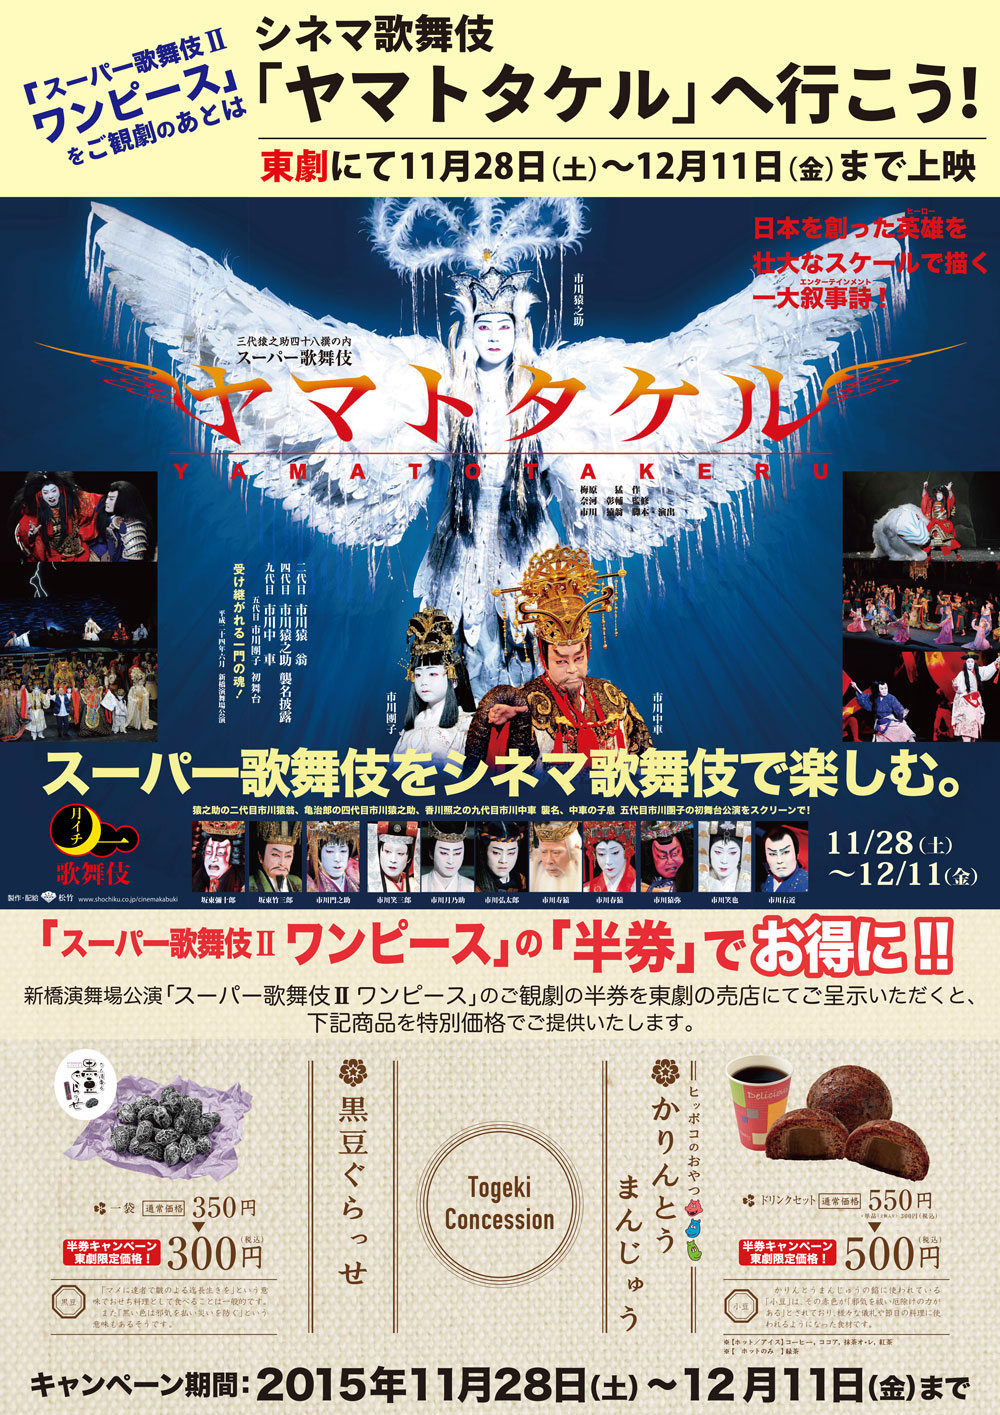 《月イチ歌舞伎》『ヤマトタケル』×スーパー歌舞伎II『ワンピース』半券キャンペーン"